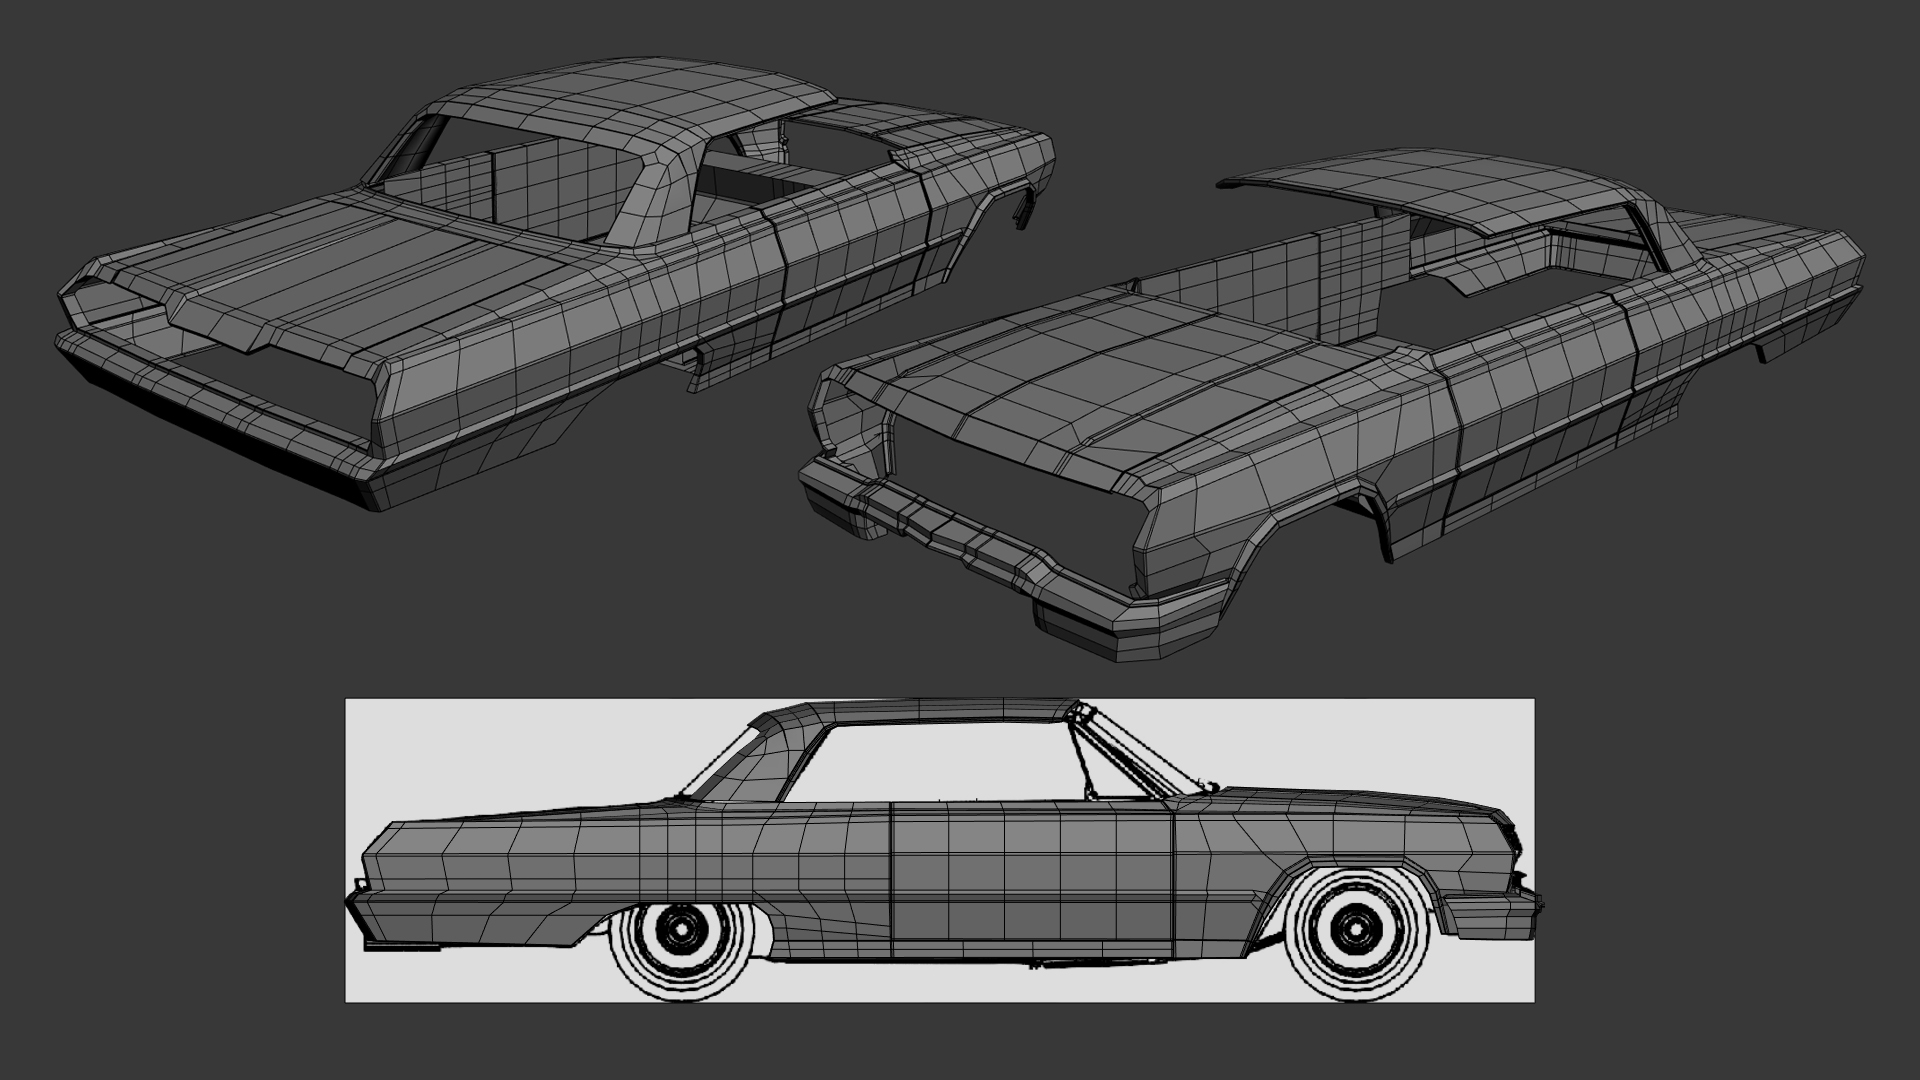 Modeling of Impala